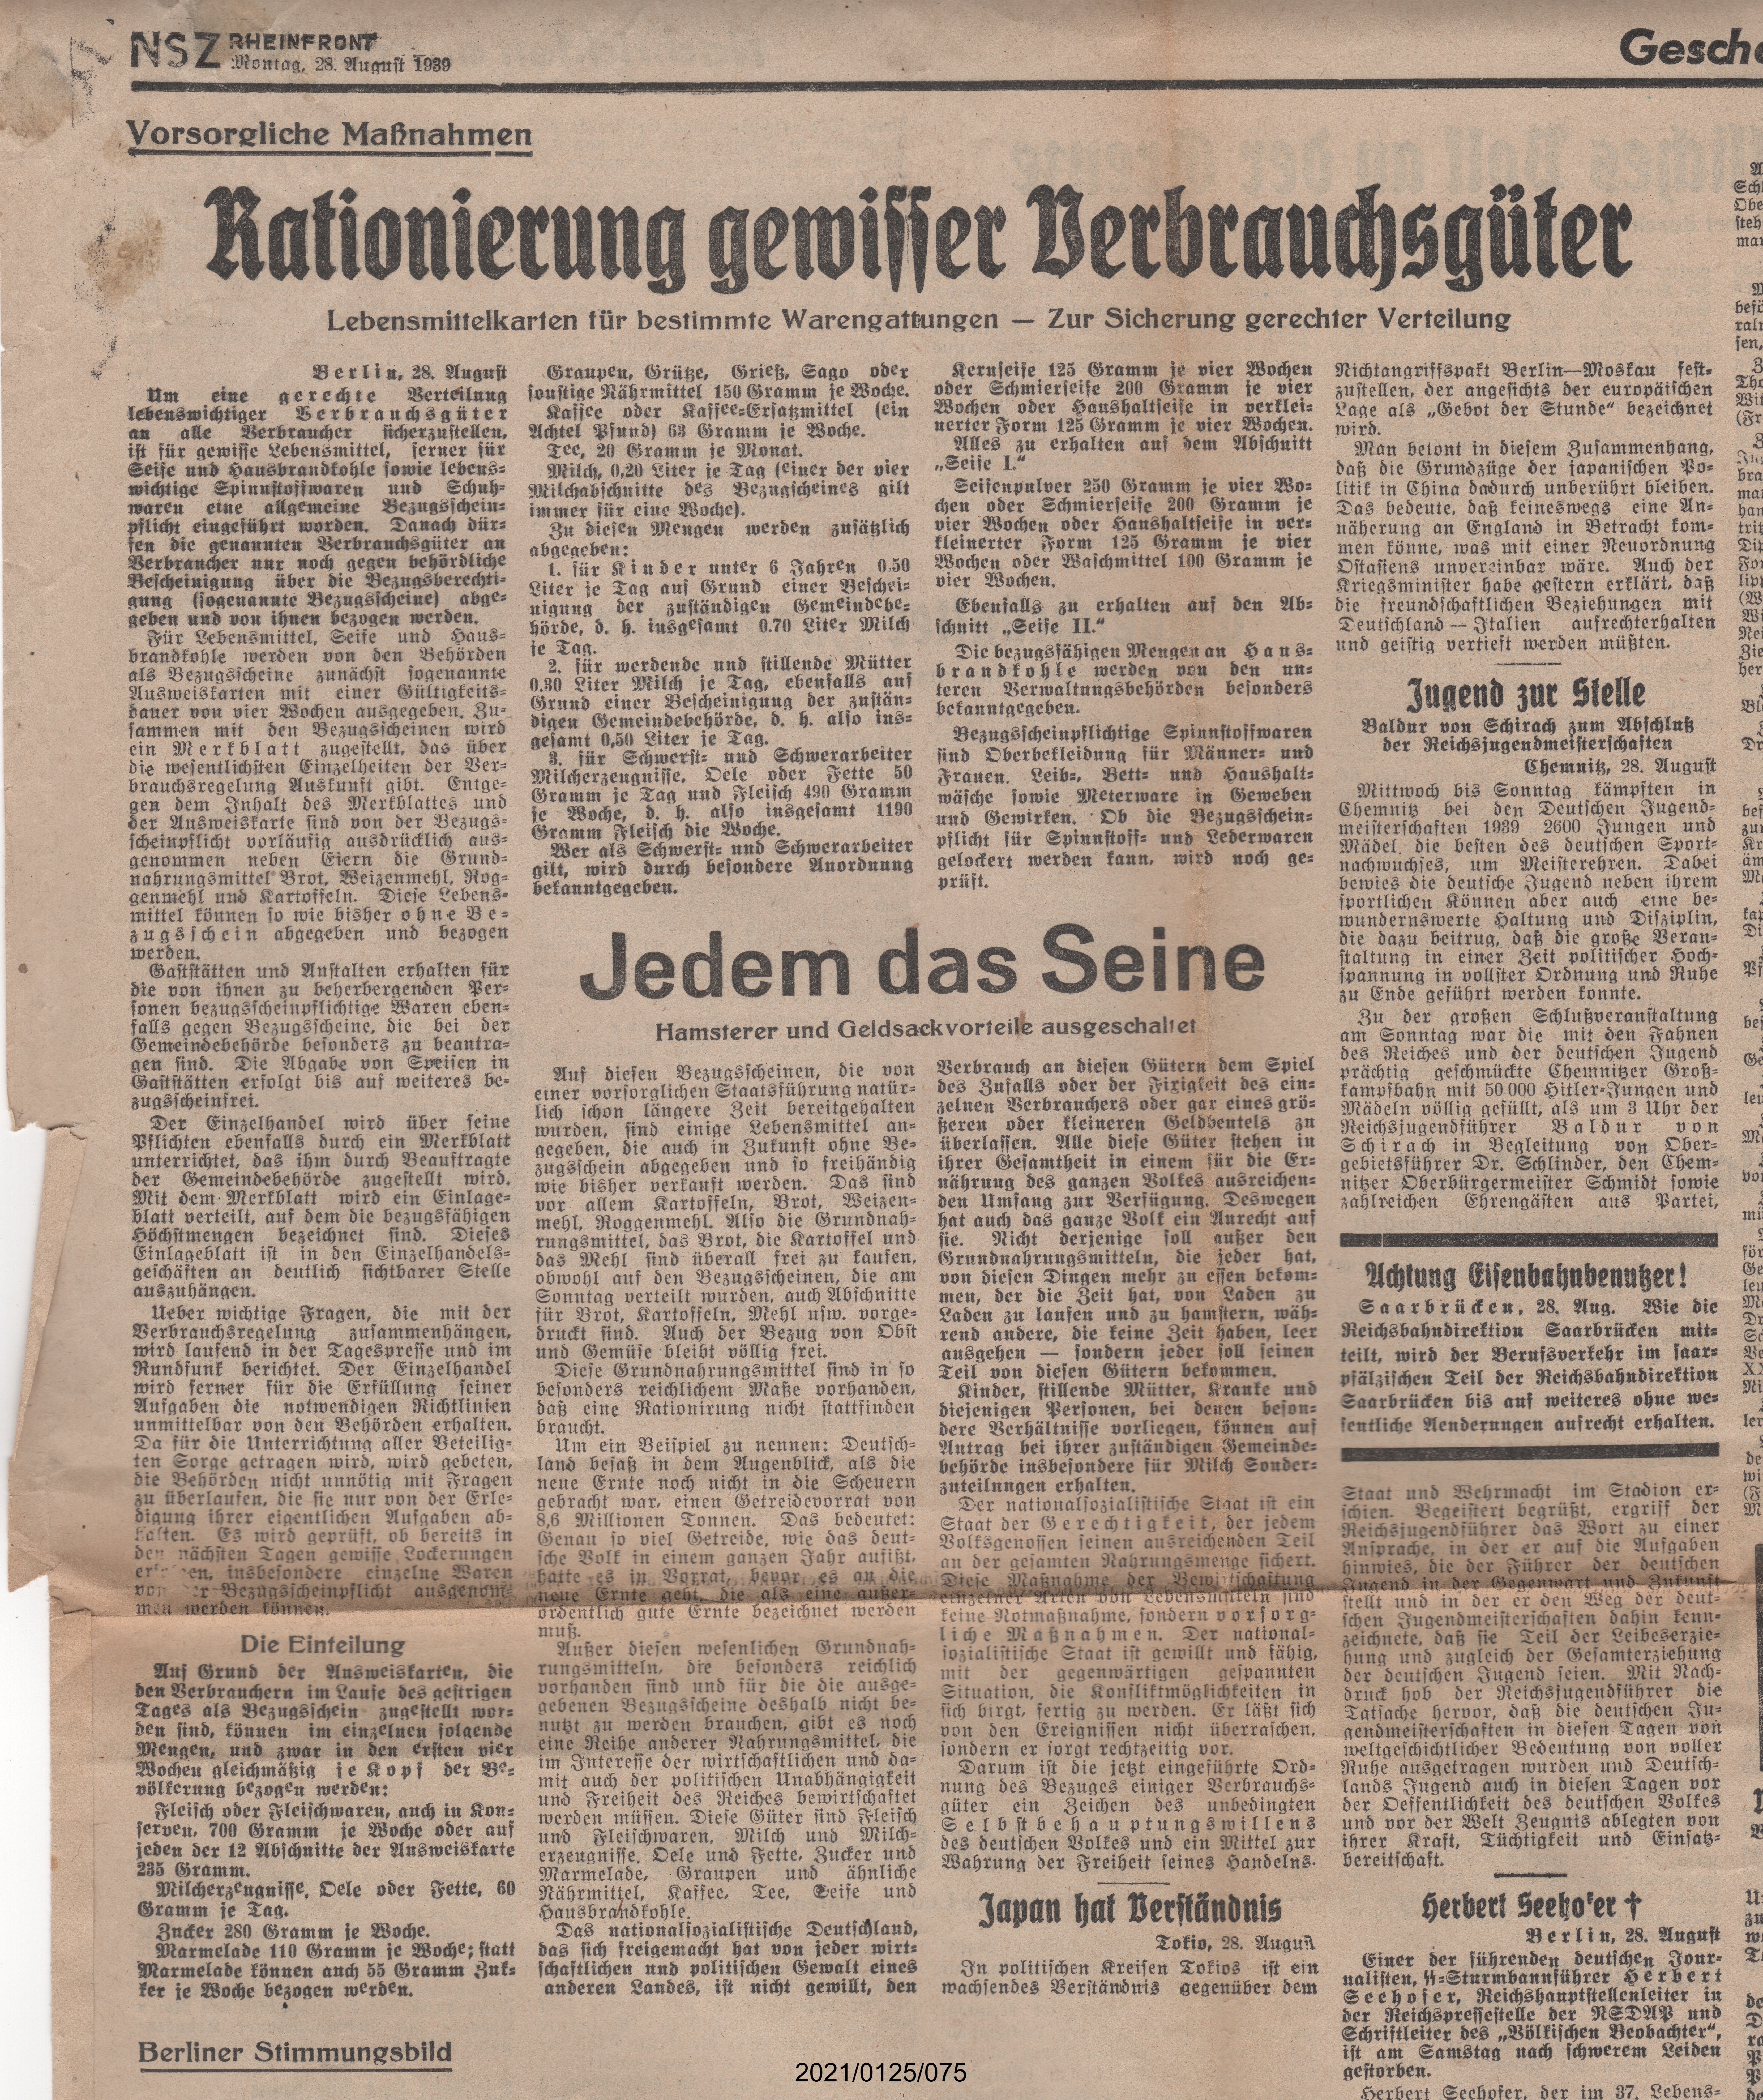 Rationierung gewisser Verbrauchsgüter 28.08.1939 (Museumsgesellschaft Bad Dürkheim e. V. CC BY-NC-SA)